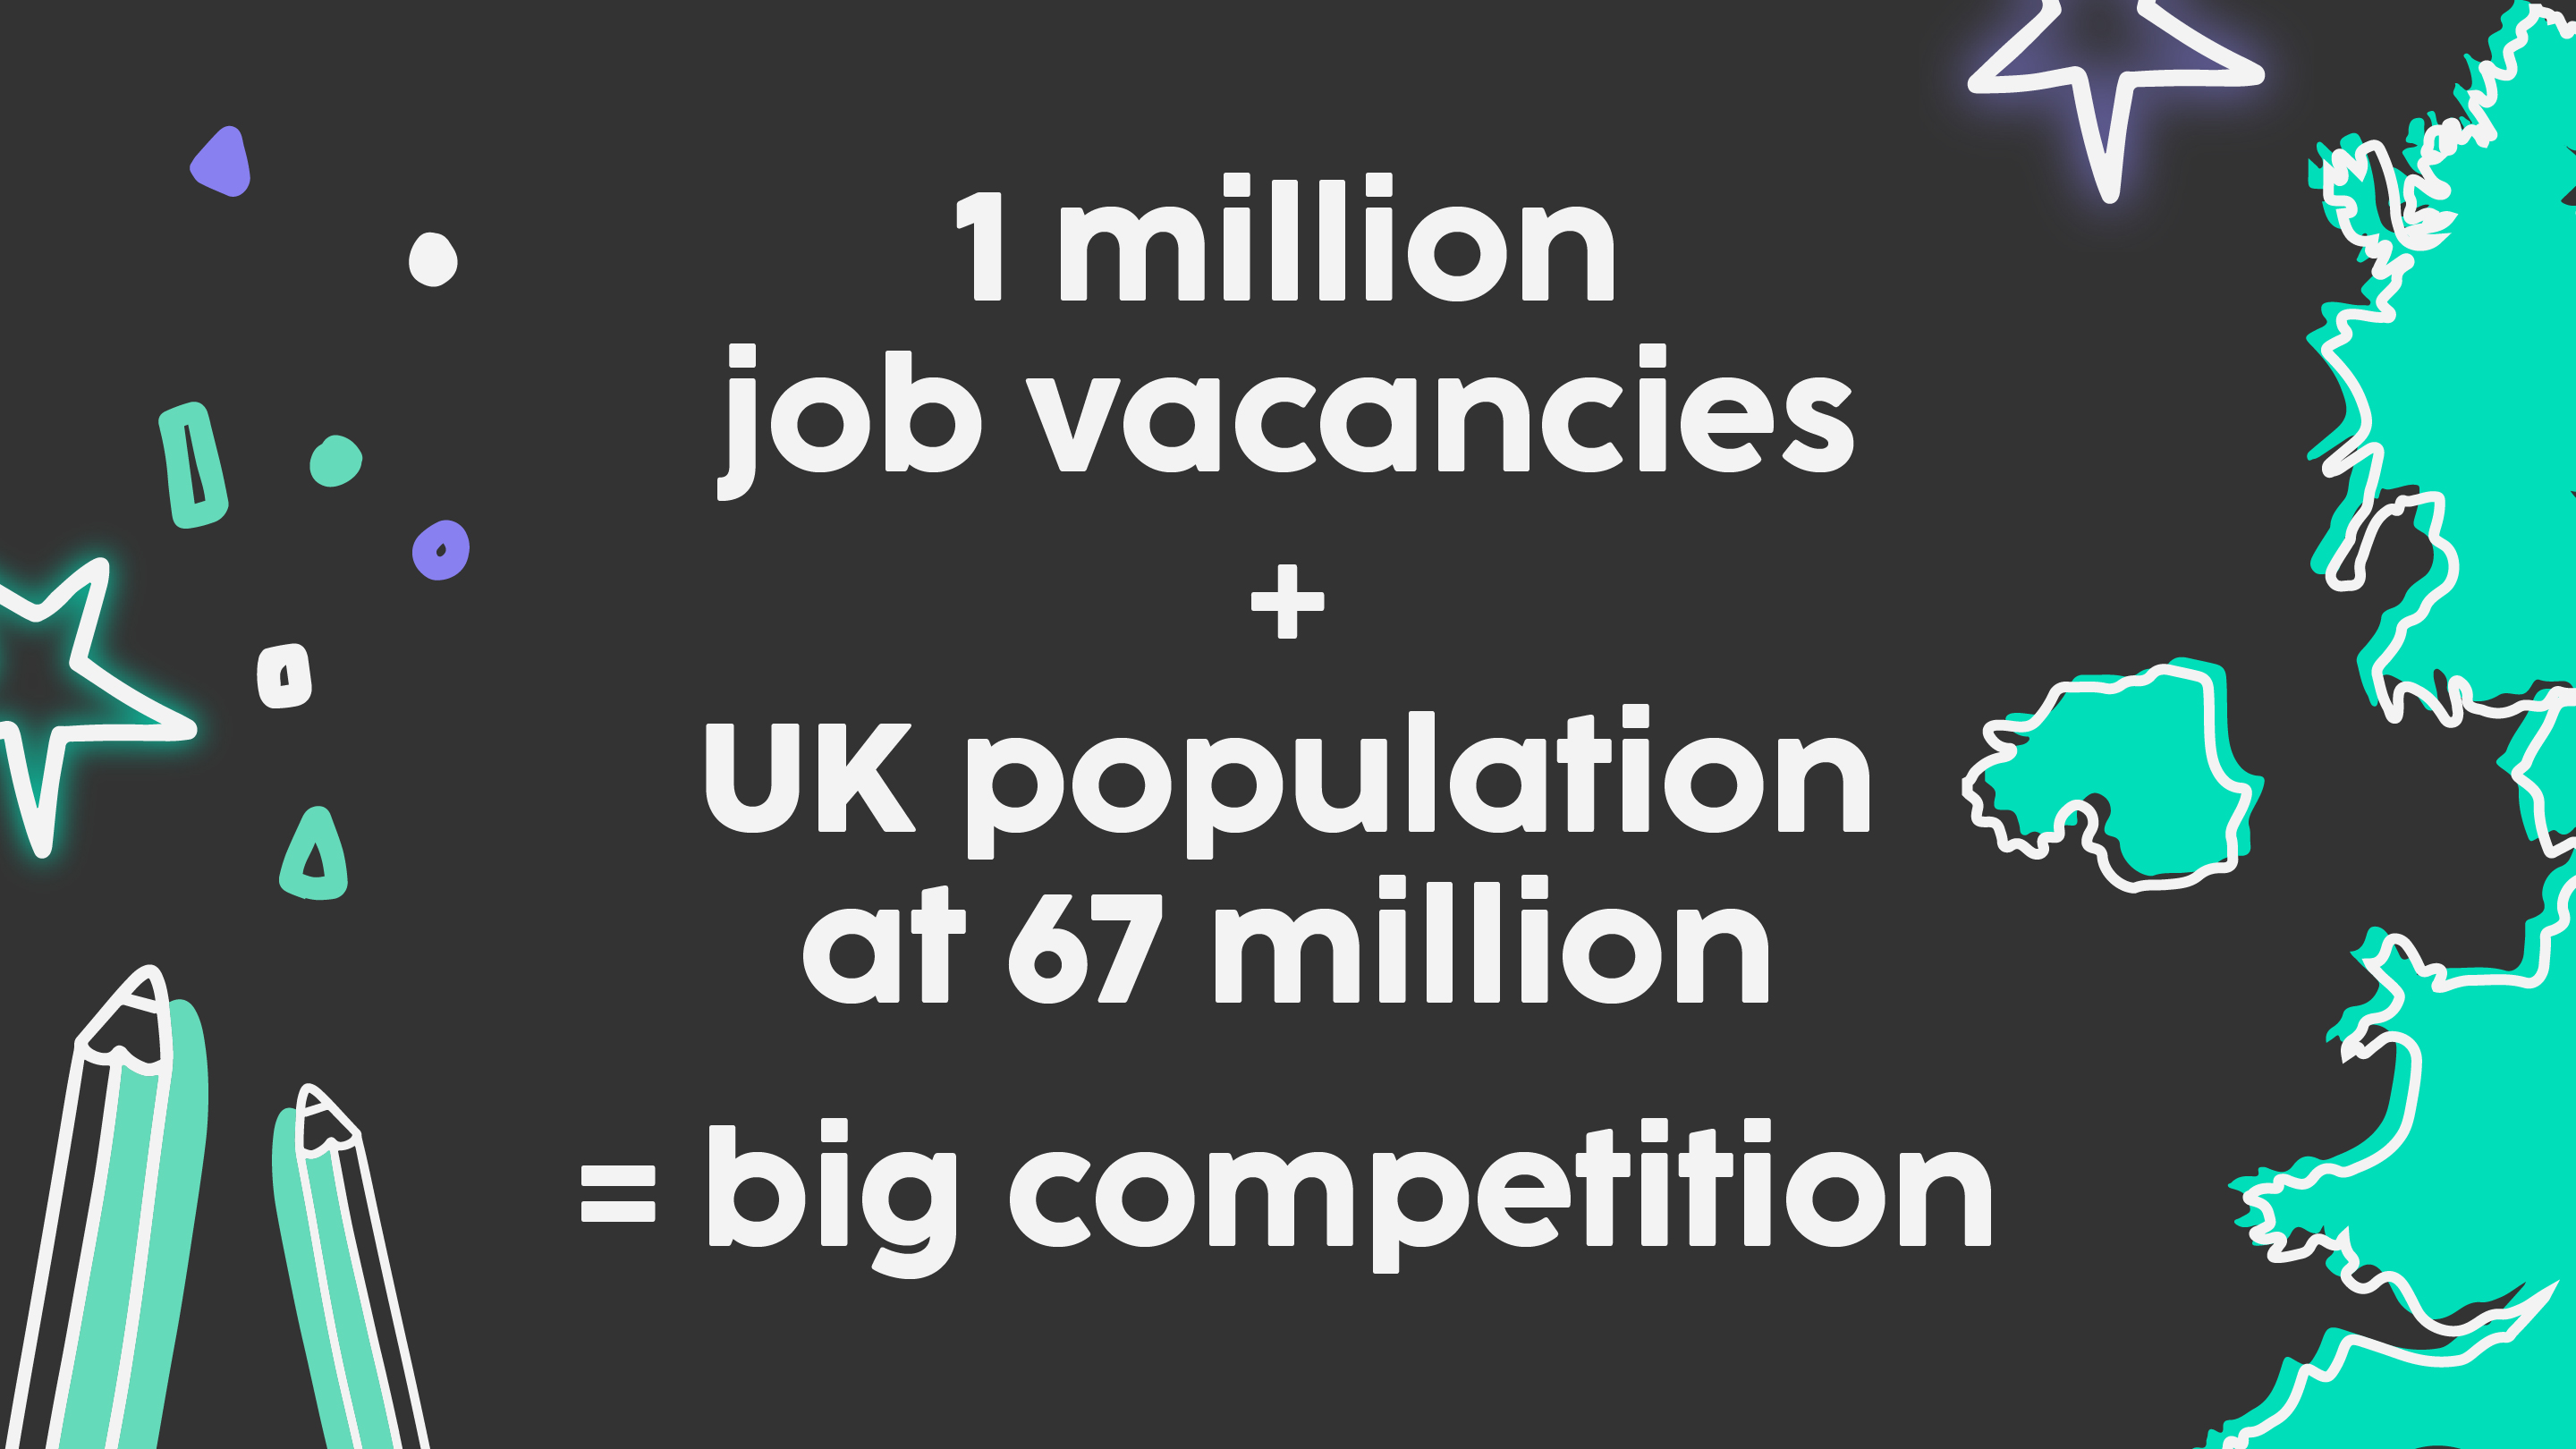 Job vacancies in the UK